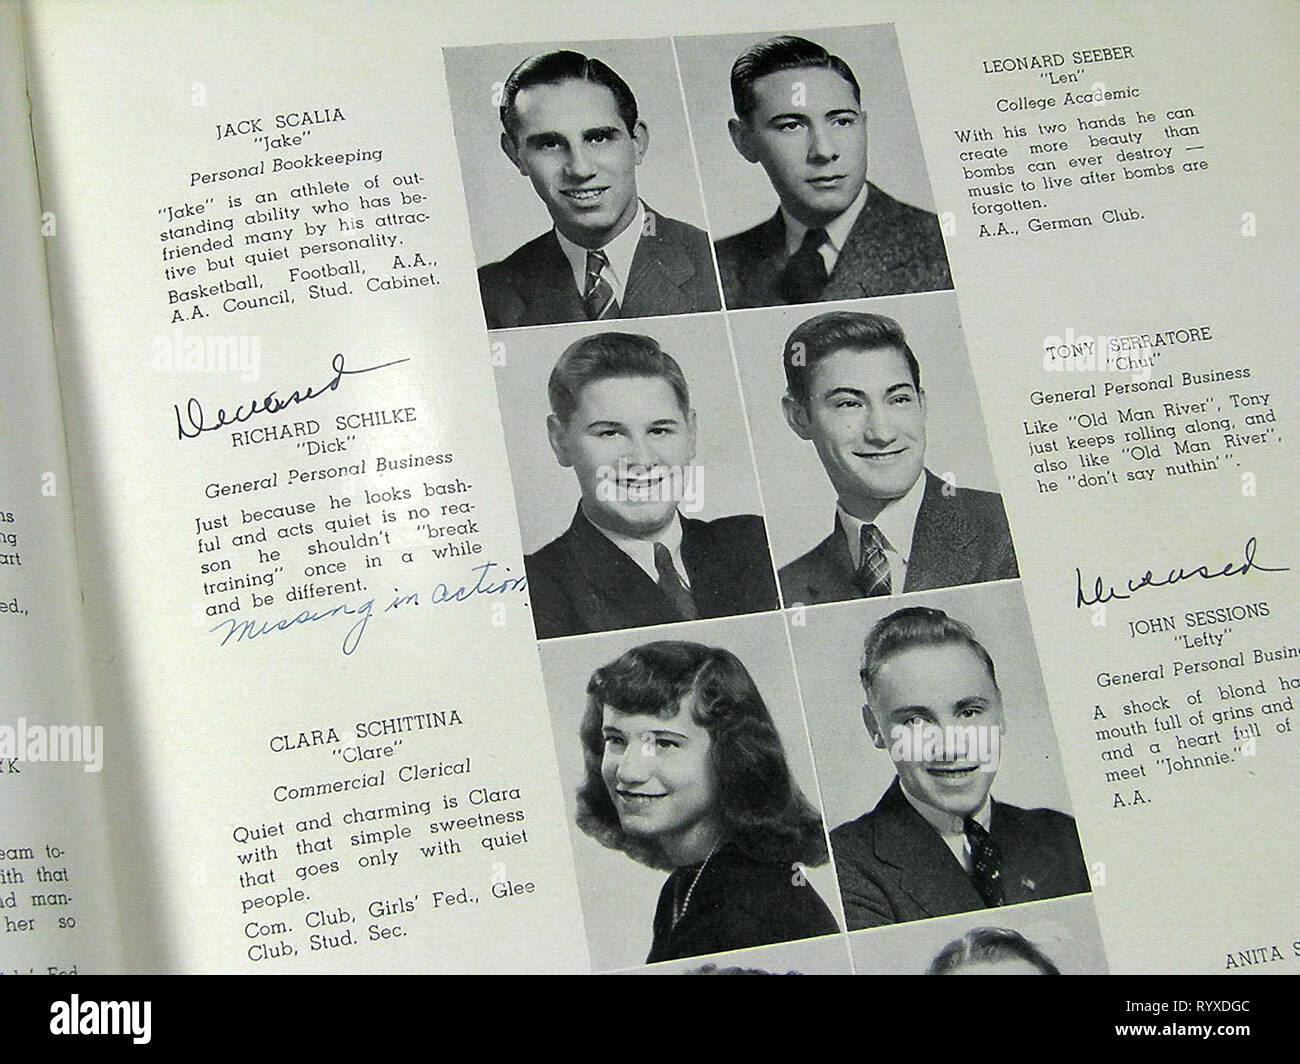 Opfer des Krieges in der Bristol High School Kategorie von 1942 und viele andere Jahrbücher über Amerika während des Zweiten Weltkriegs. Stockfoto